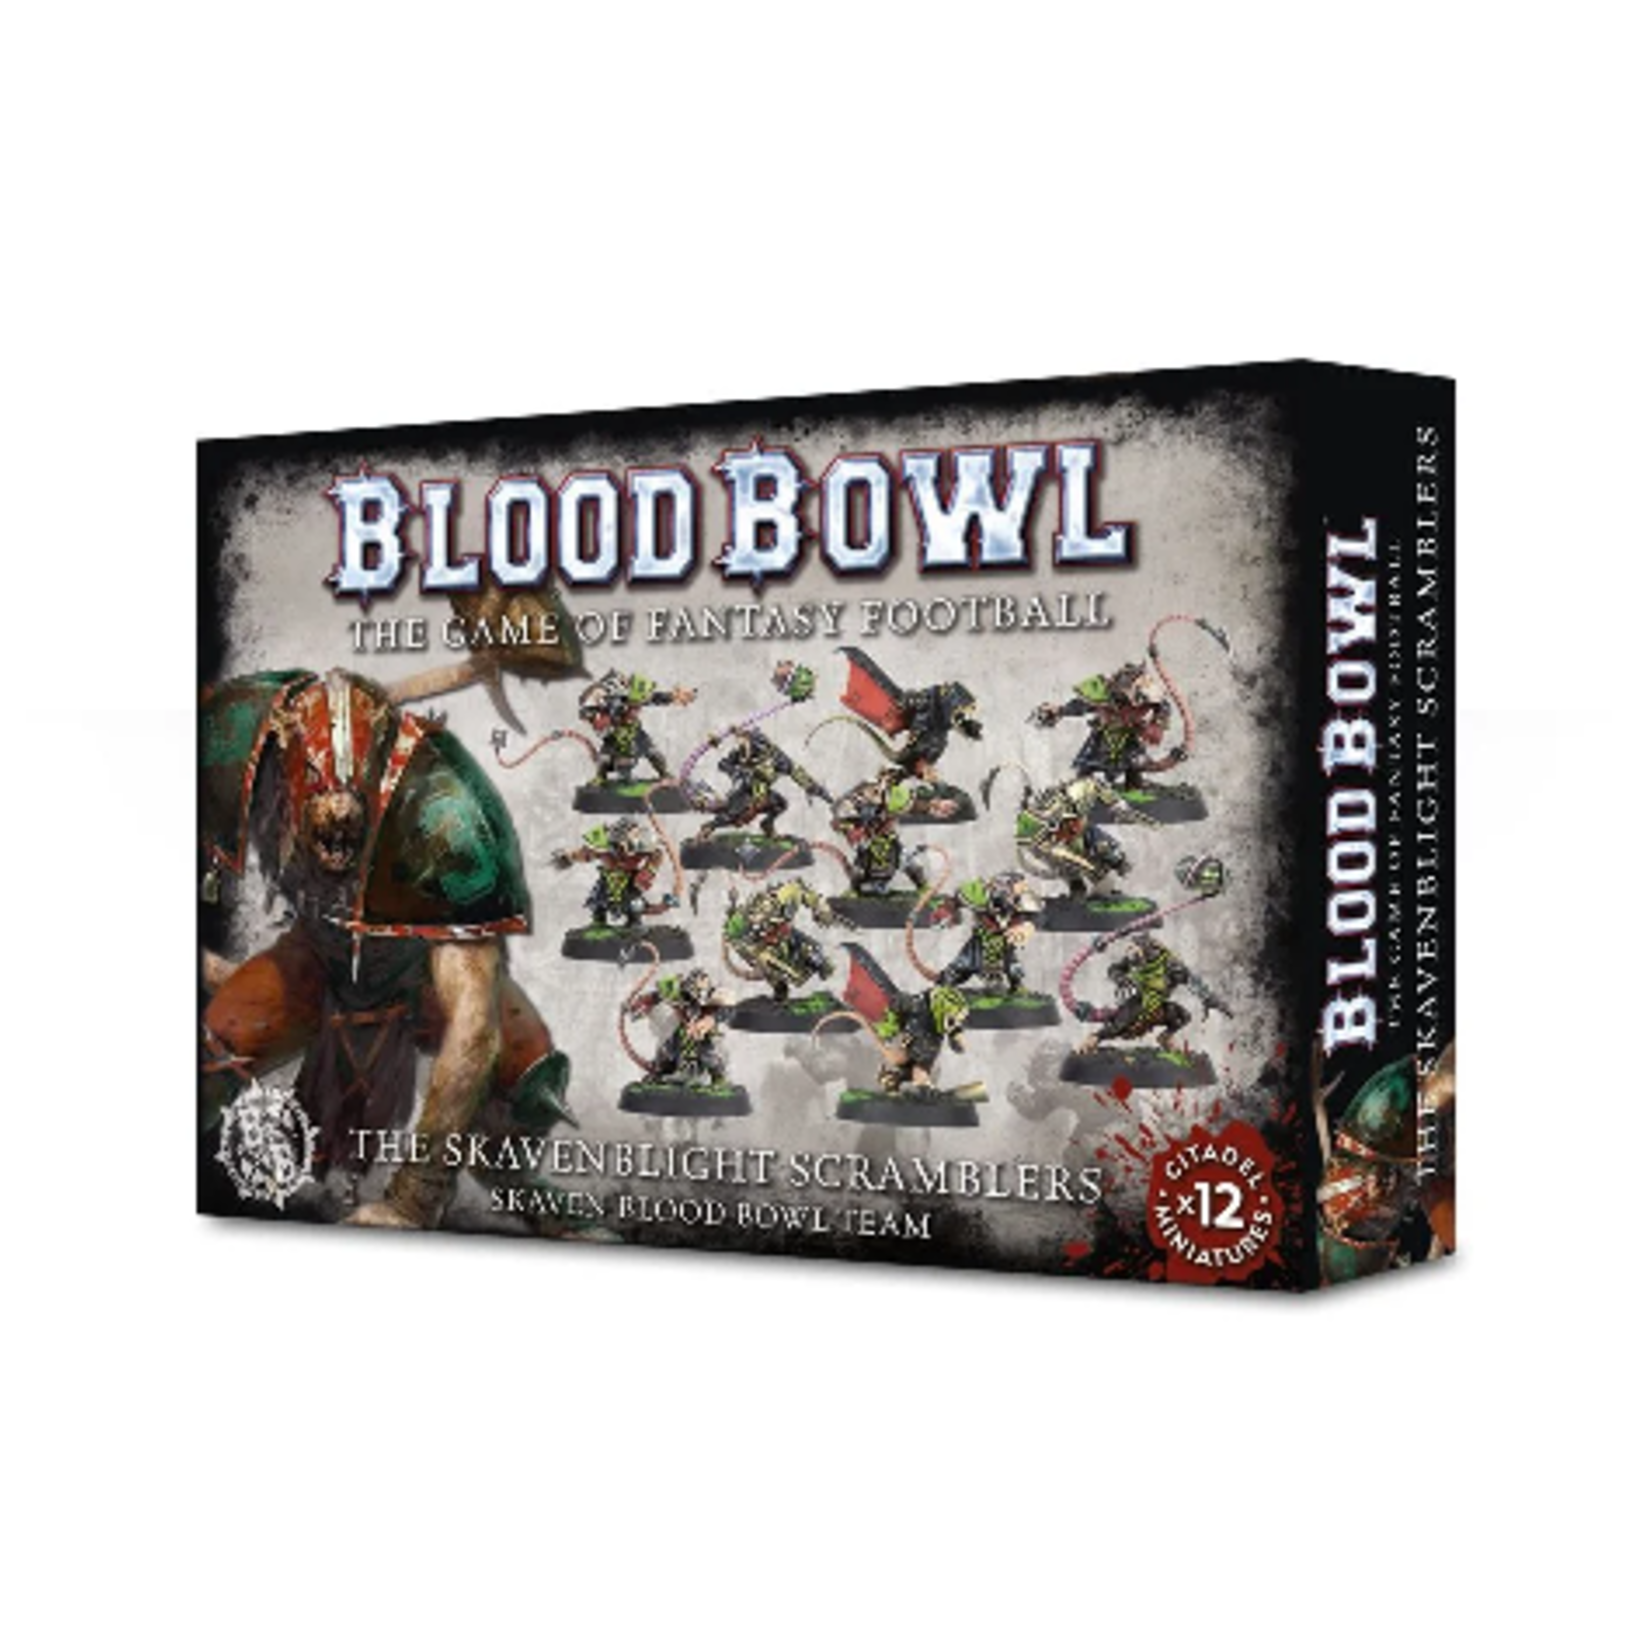 Blood Bowl: The Skavenblight Scramblers - Skaven Team